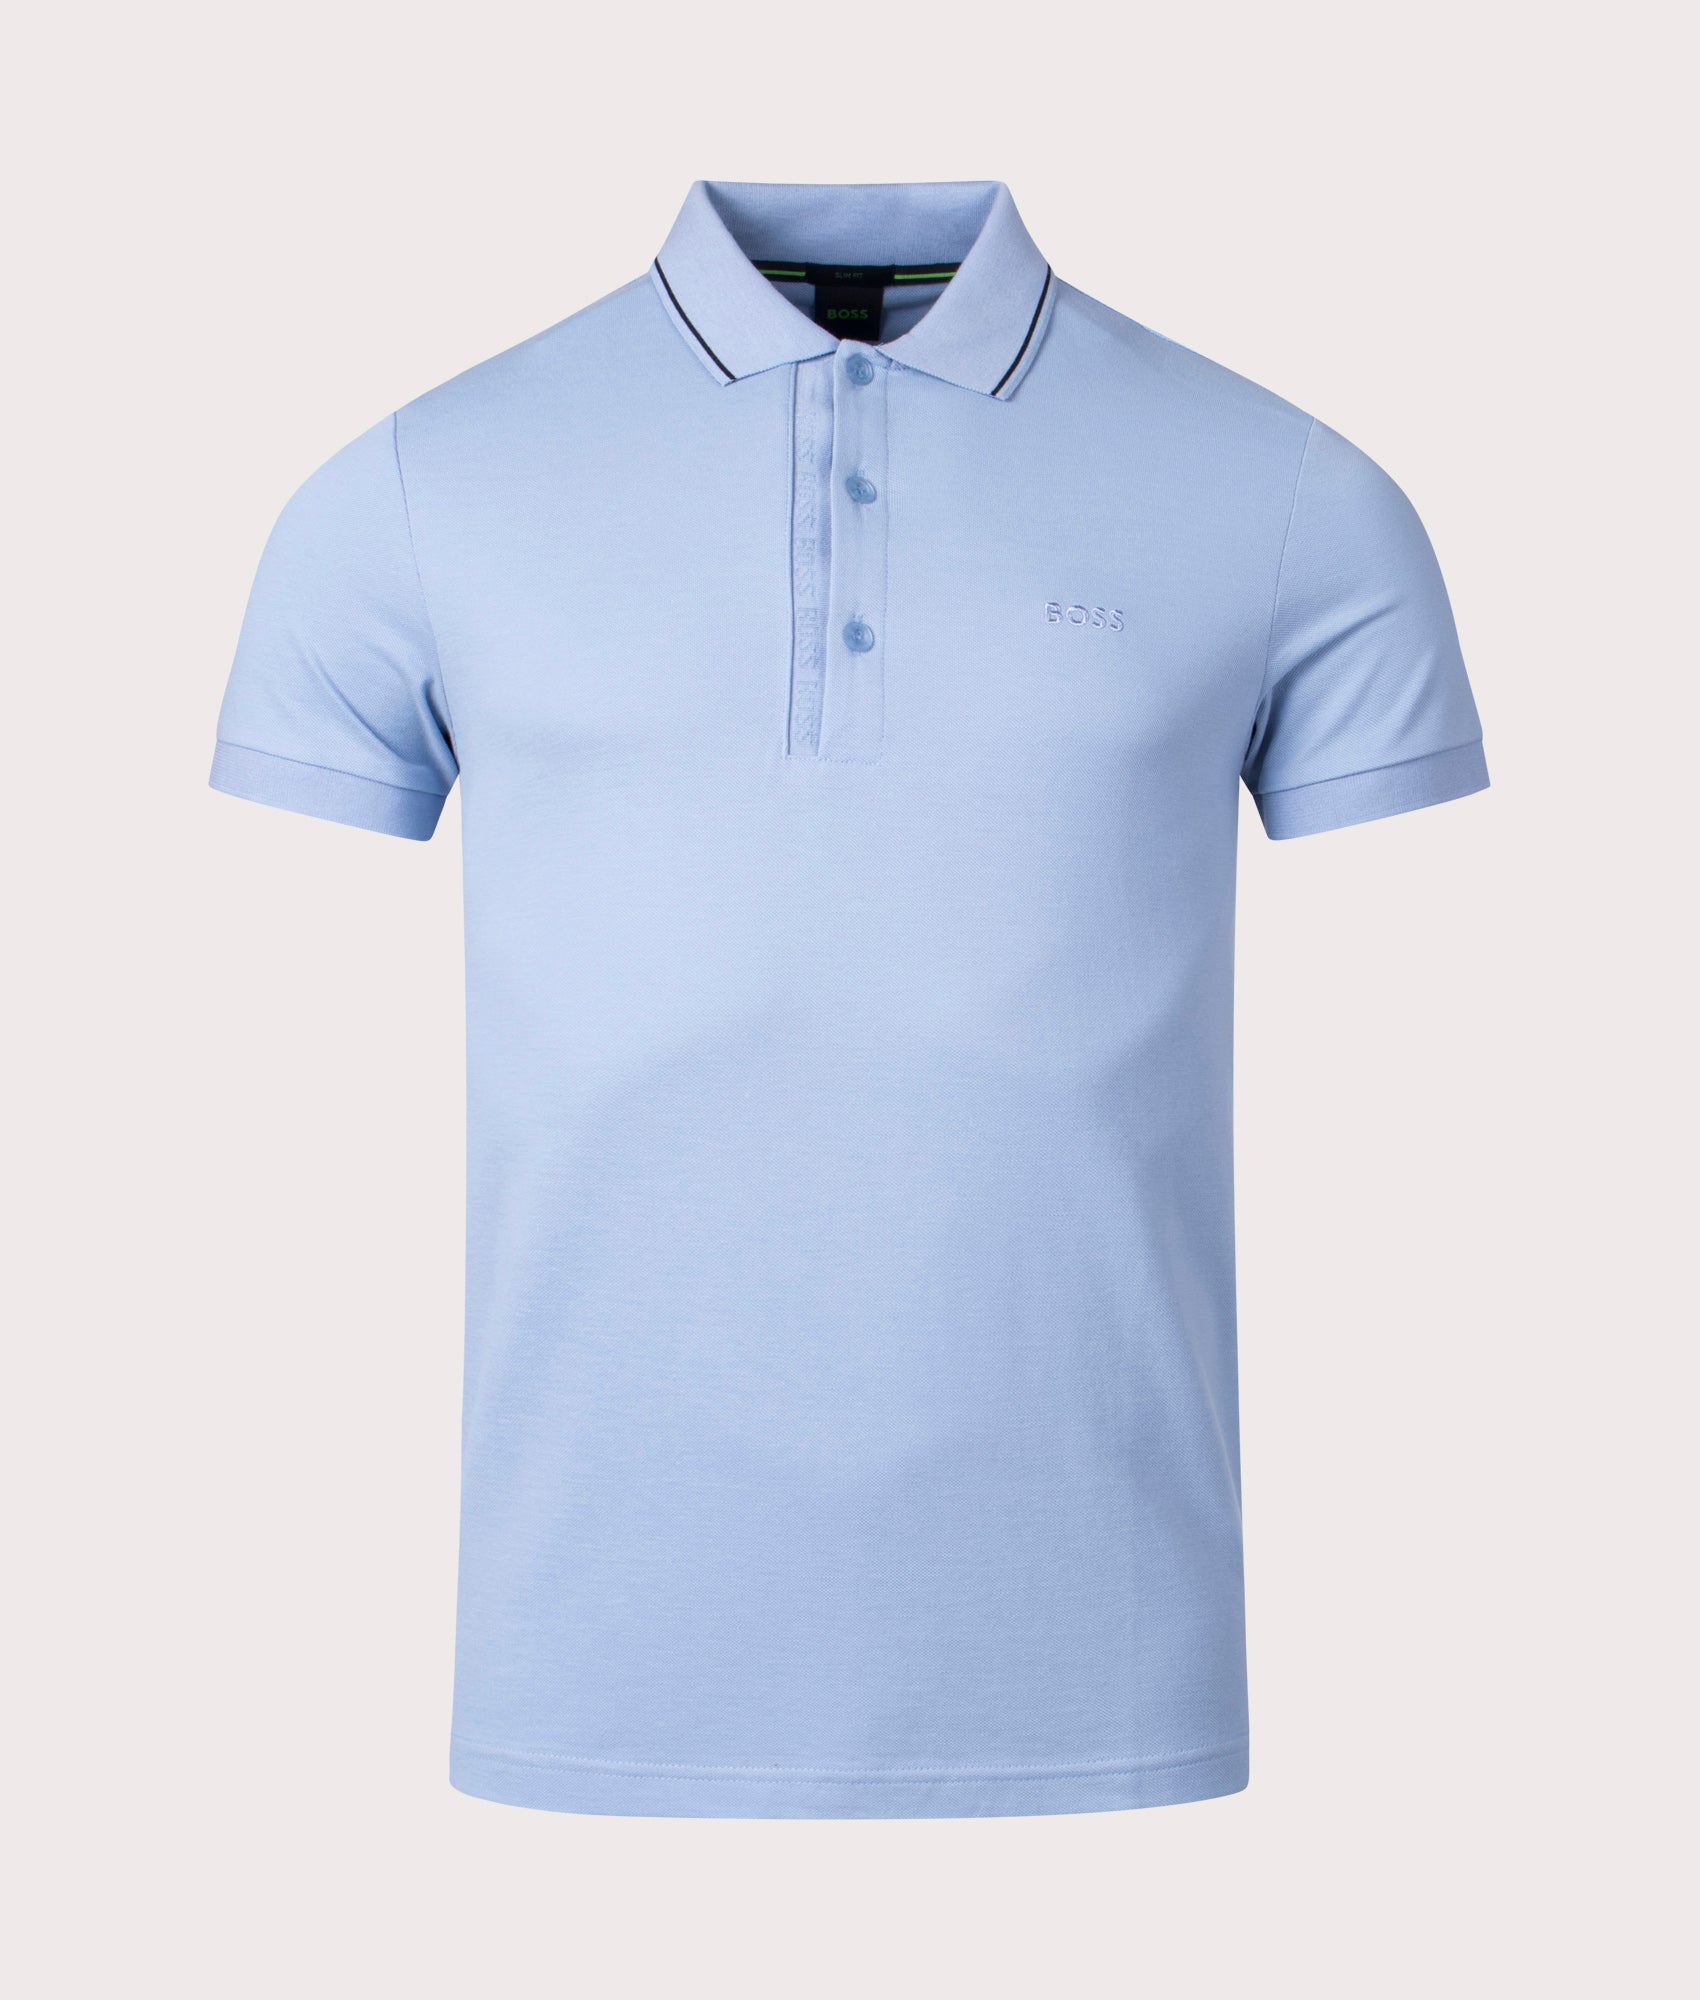 BOSS Mens Slim Fit Paule 4 Polo Shirt - Colour: 498 Open Blue - Size: Medium